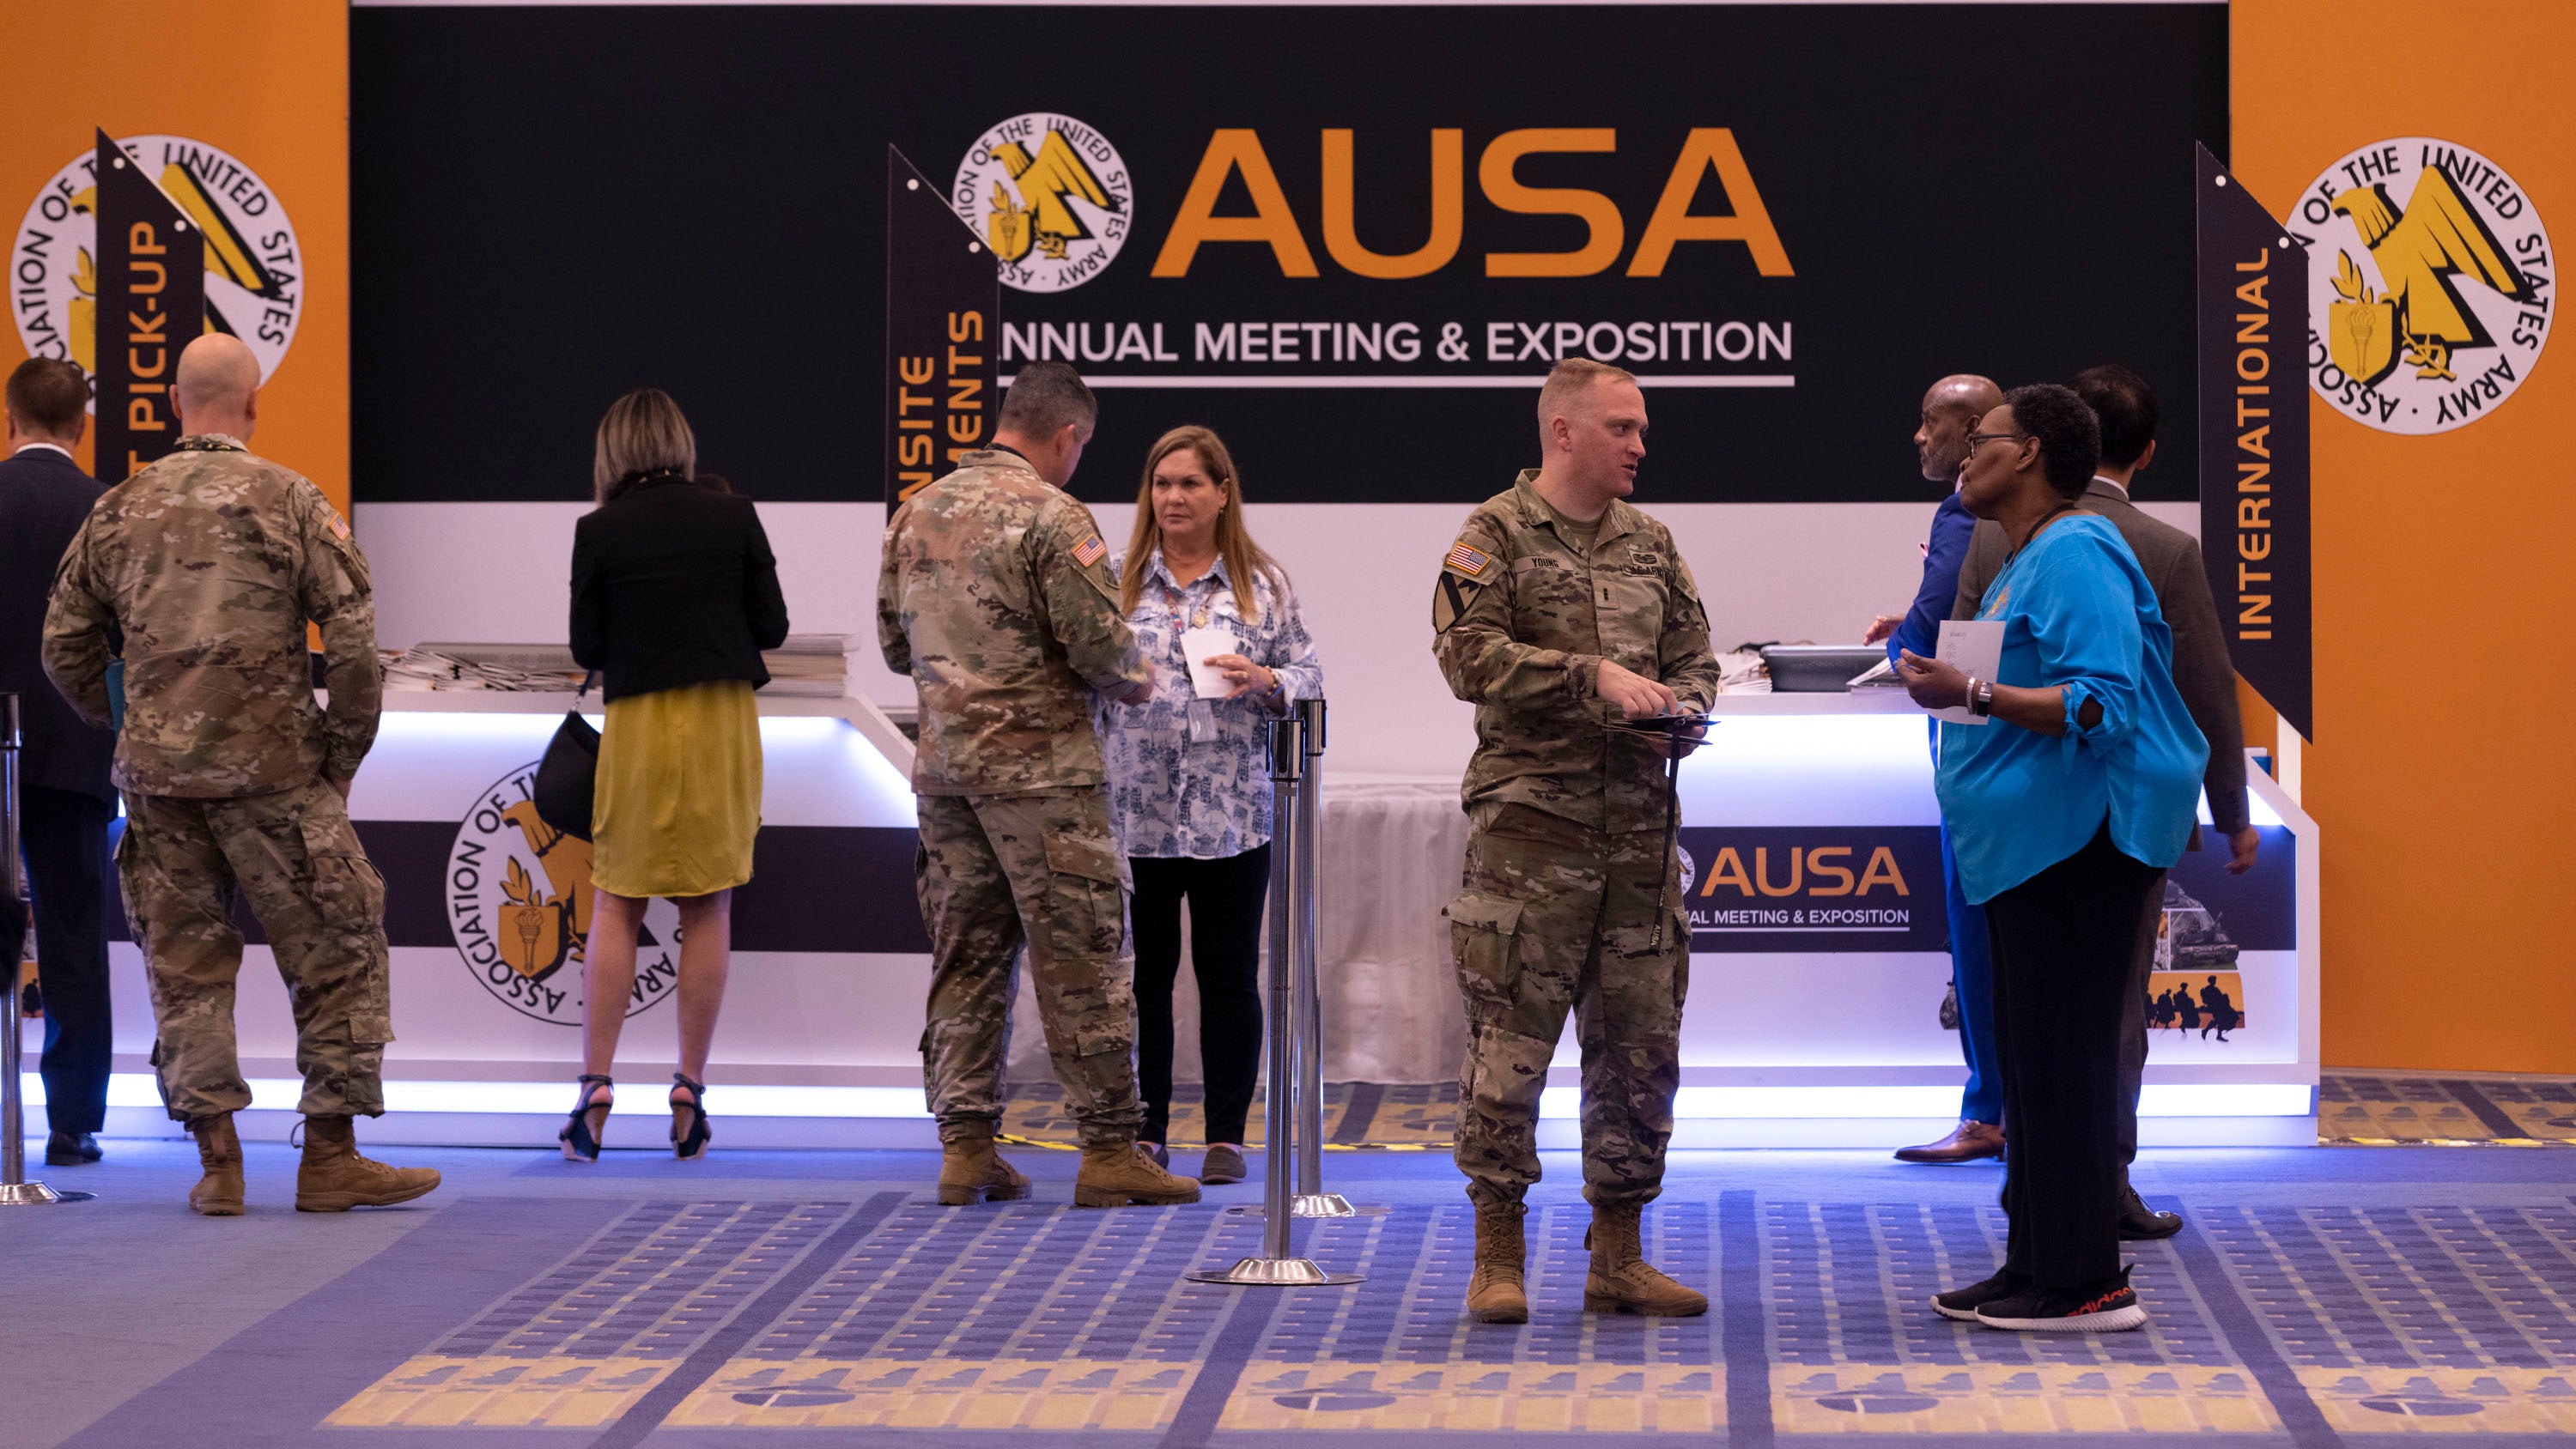 AUSA Registration at AUSA 2022 Annual Meeting in Washington, D.C., Monday, Oct. 10, 2022. (Tasos Katopodis for AUSA)